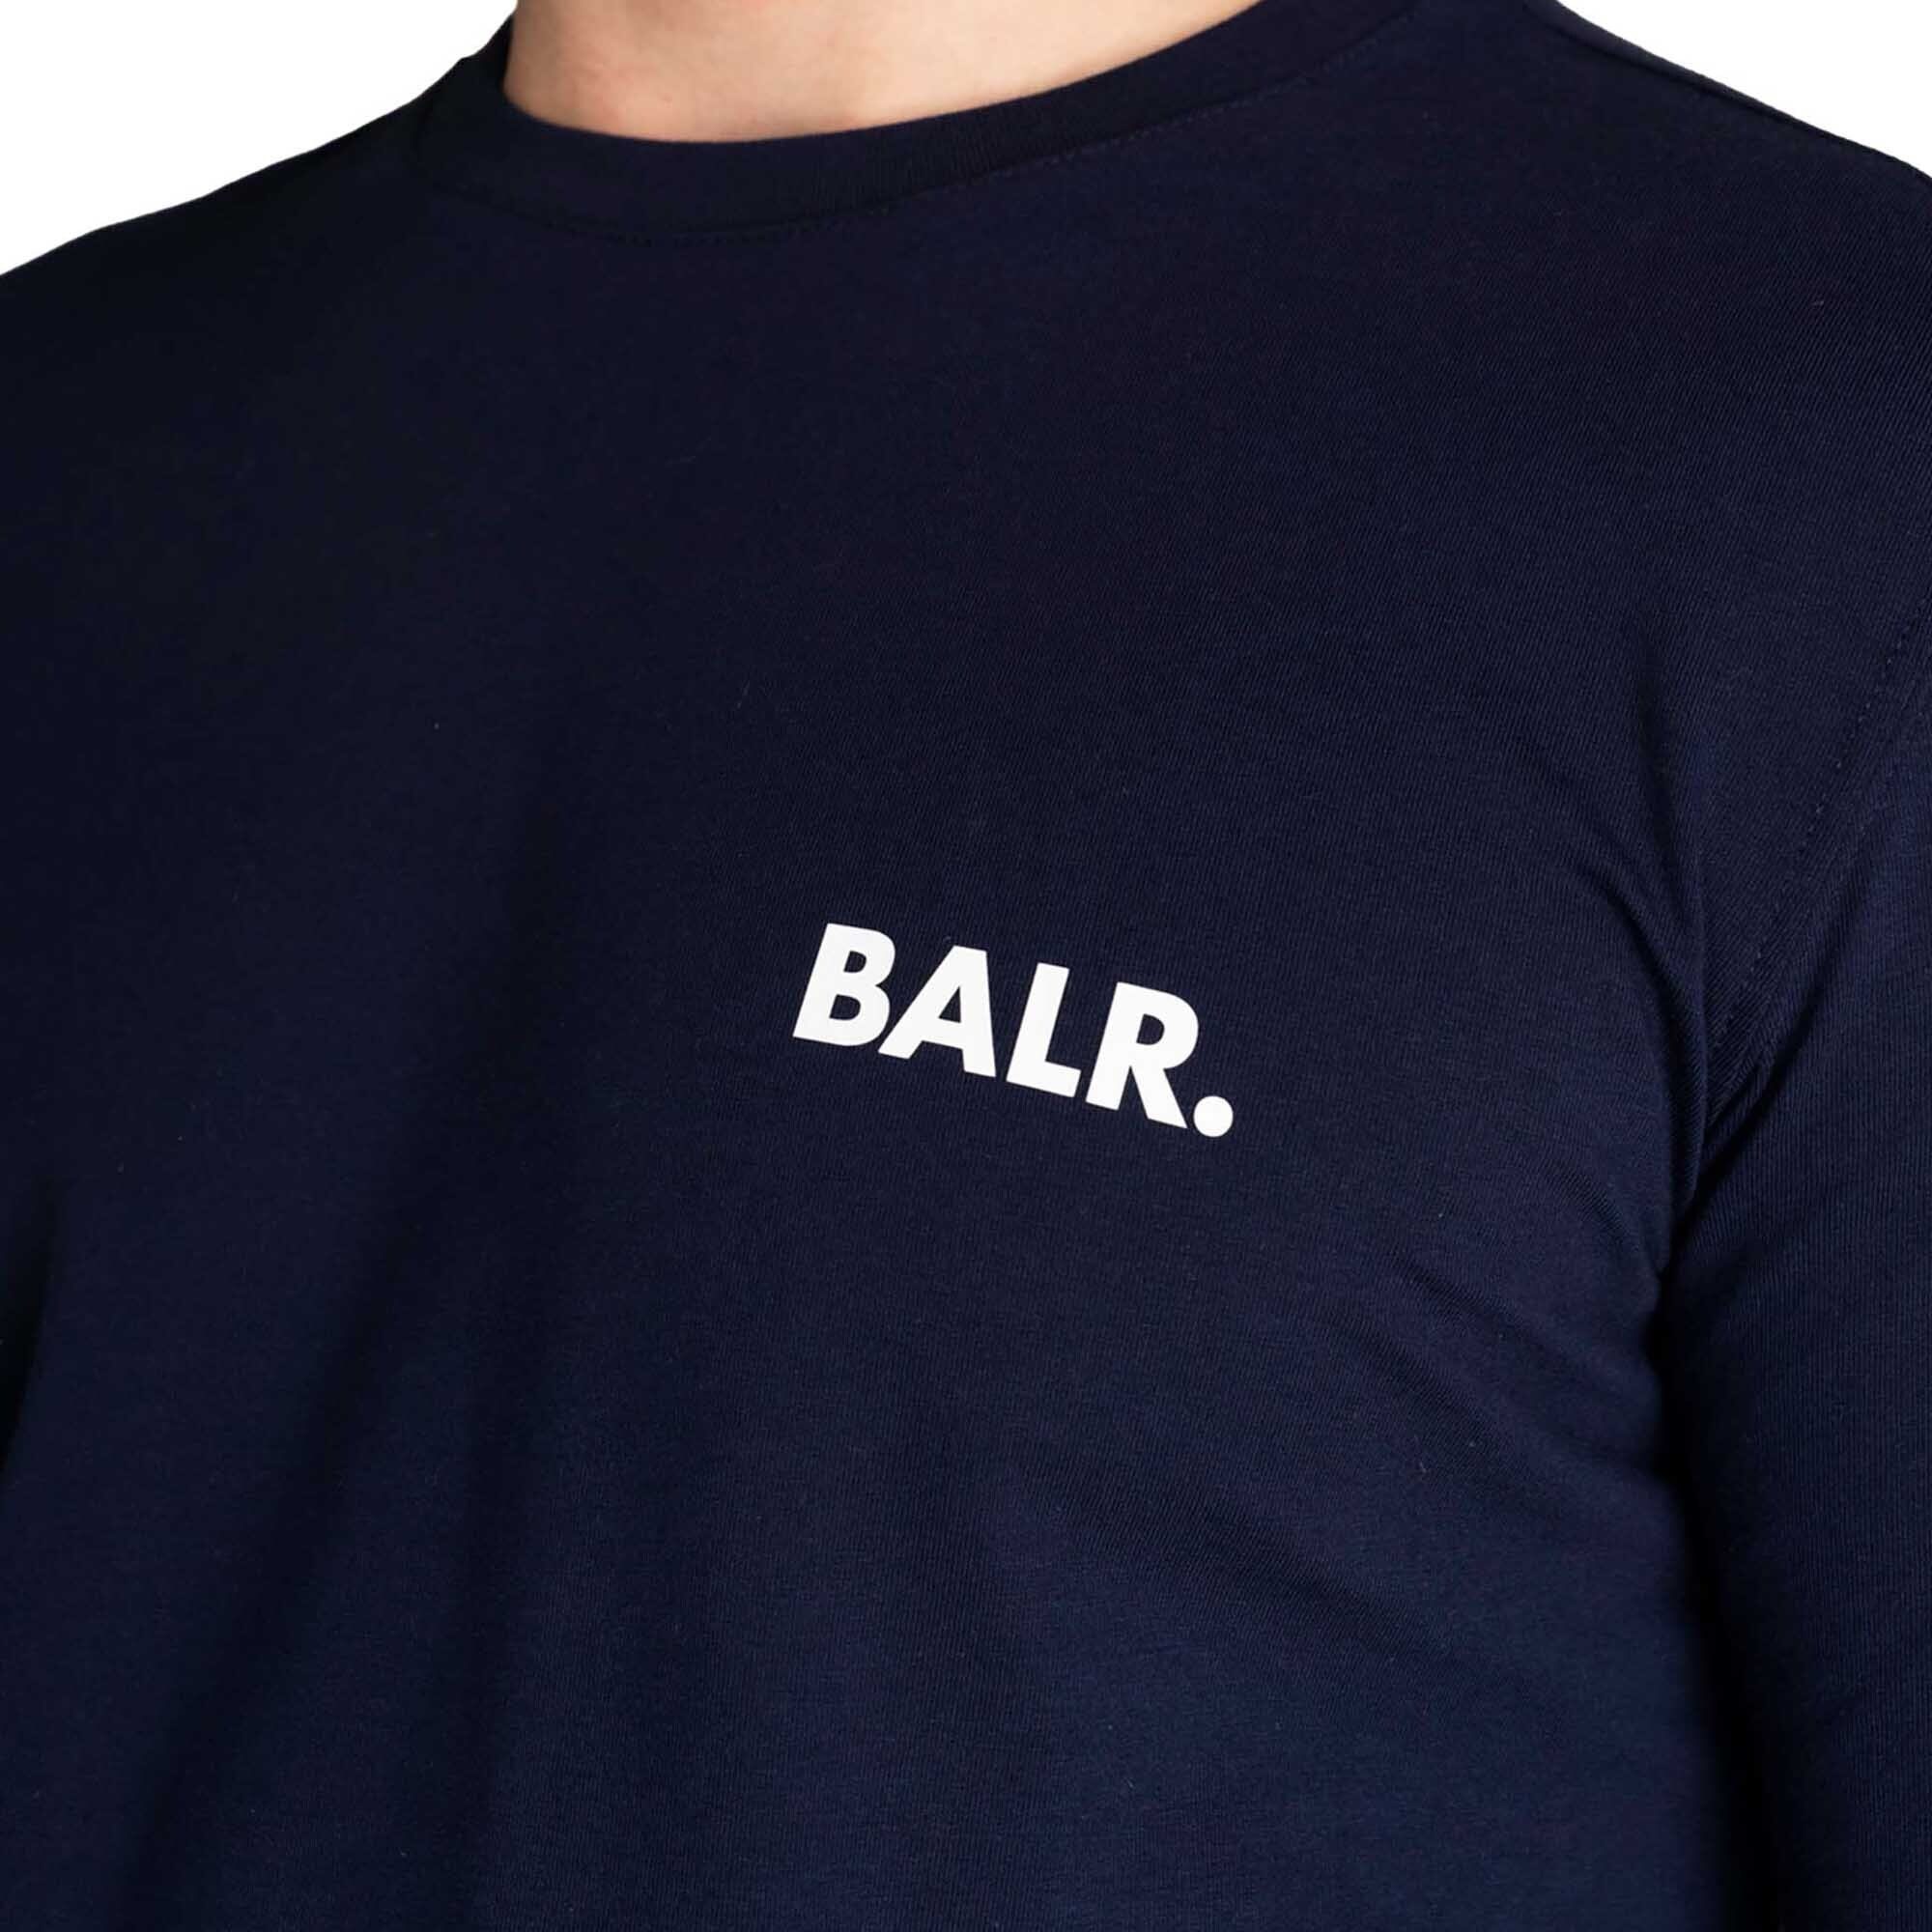 BALR. T-Shirt Herren - Chest Dunkelblau Small Branded T-Shirt Athletic